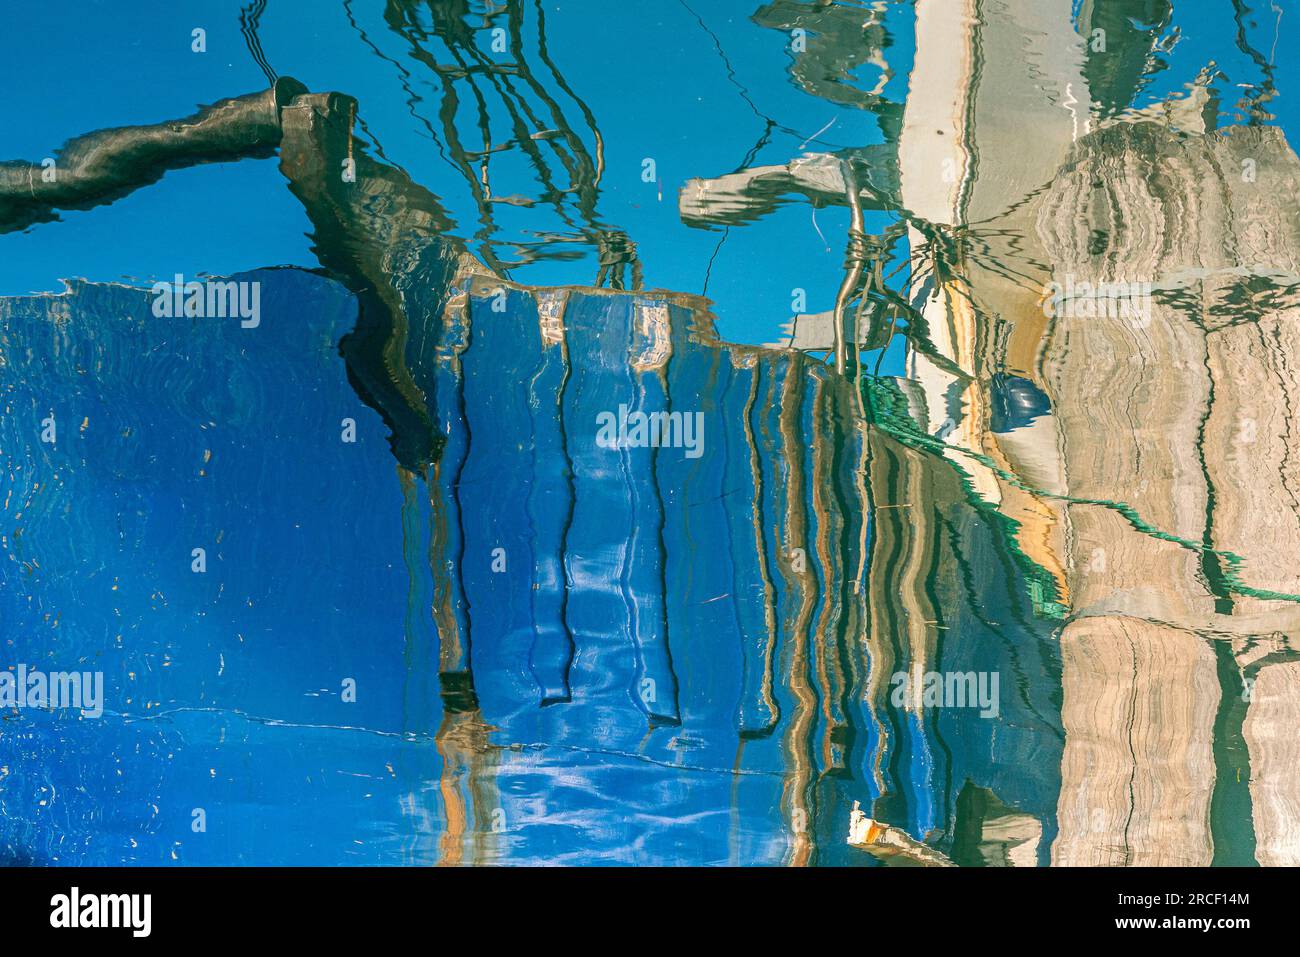 Images de reflets d'eau abstraits colorés réalisés par Mary catherine Messner de mcmessner.com. Banque D'Images